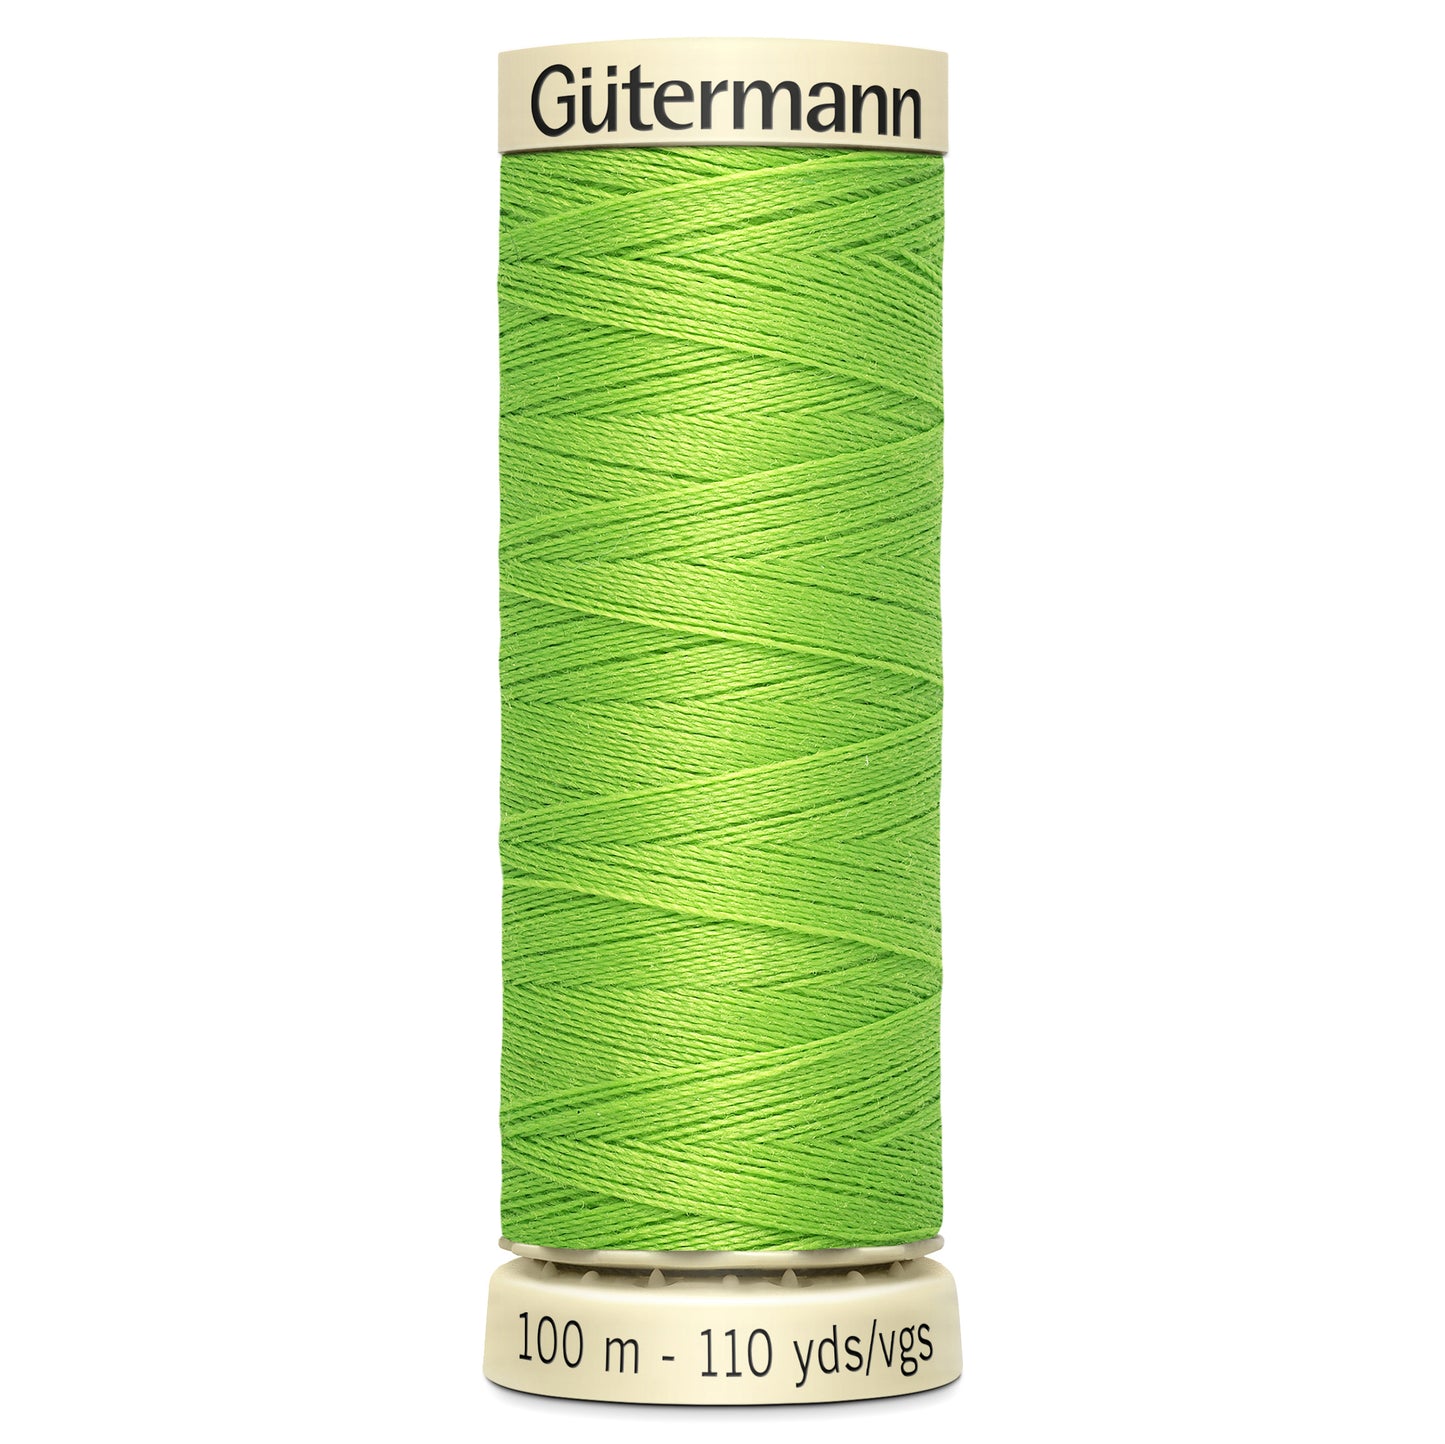 Shade 336 - Sew-All Thread: 100m - Gutermann